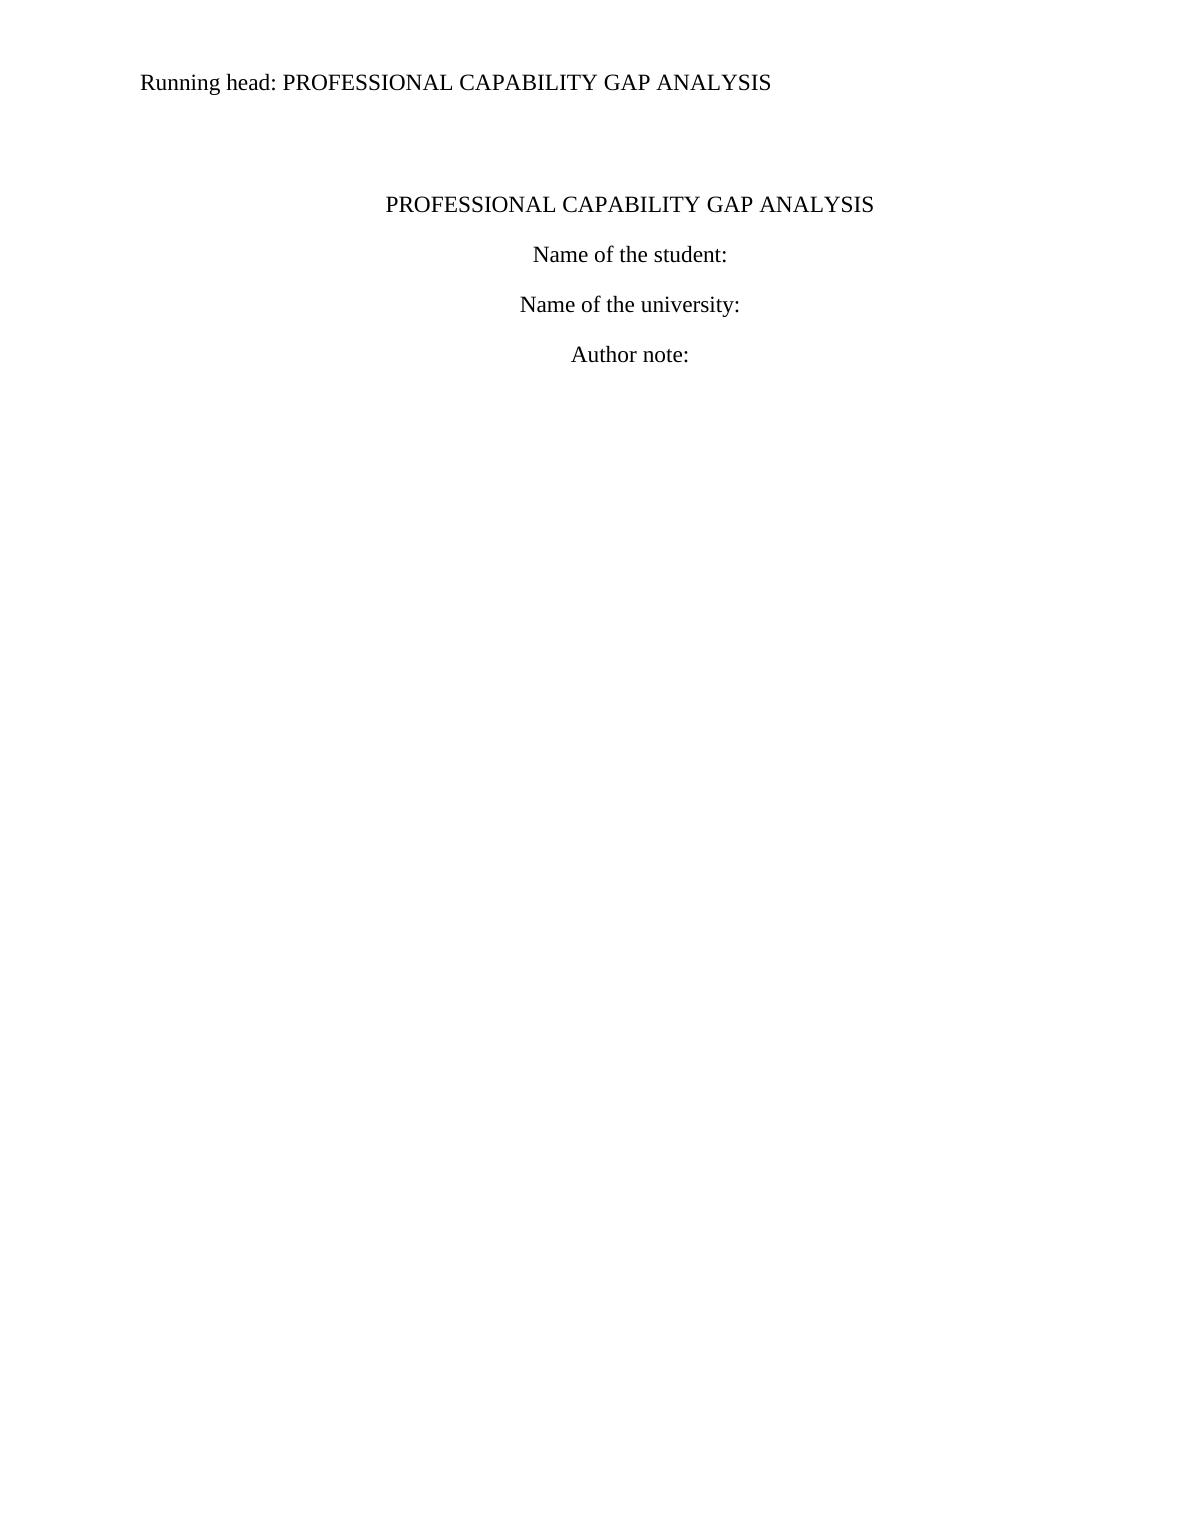 (PDF) Gap Analysis - Report_1